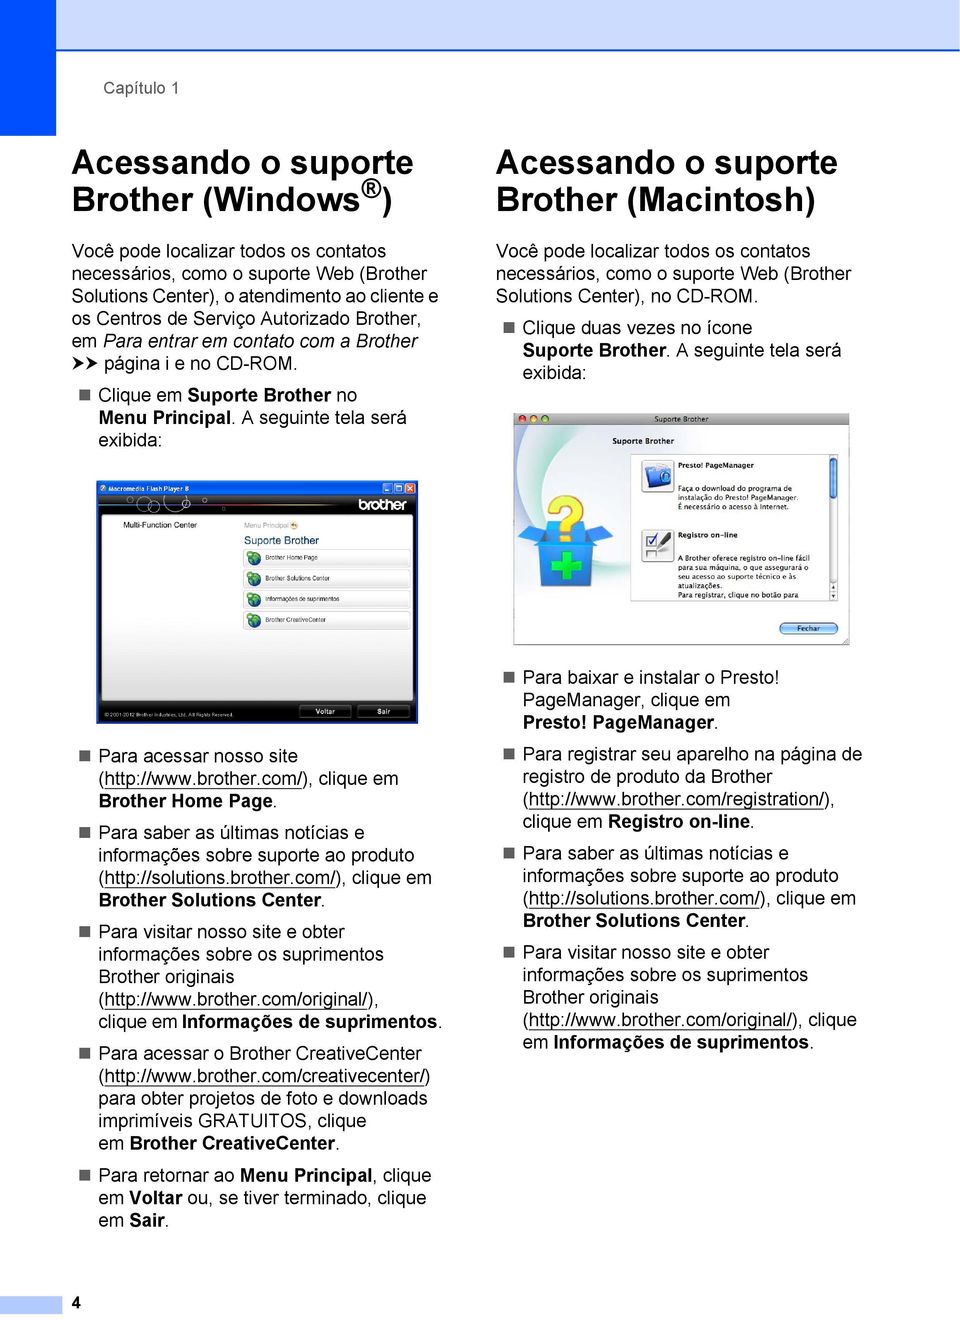 A seguinte tela será exibida: Acessando o suporte Brother (Macintosh) 1 Você pode localizar todos os contatos necessários, como o suporte Web (Brother Solutions Center), no CD-ROM.